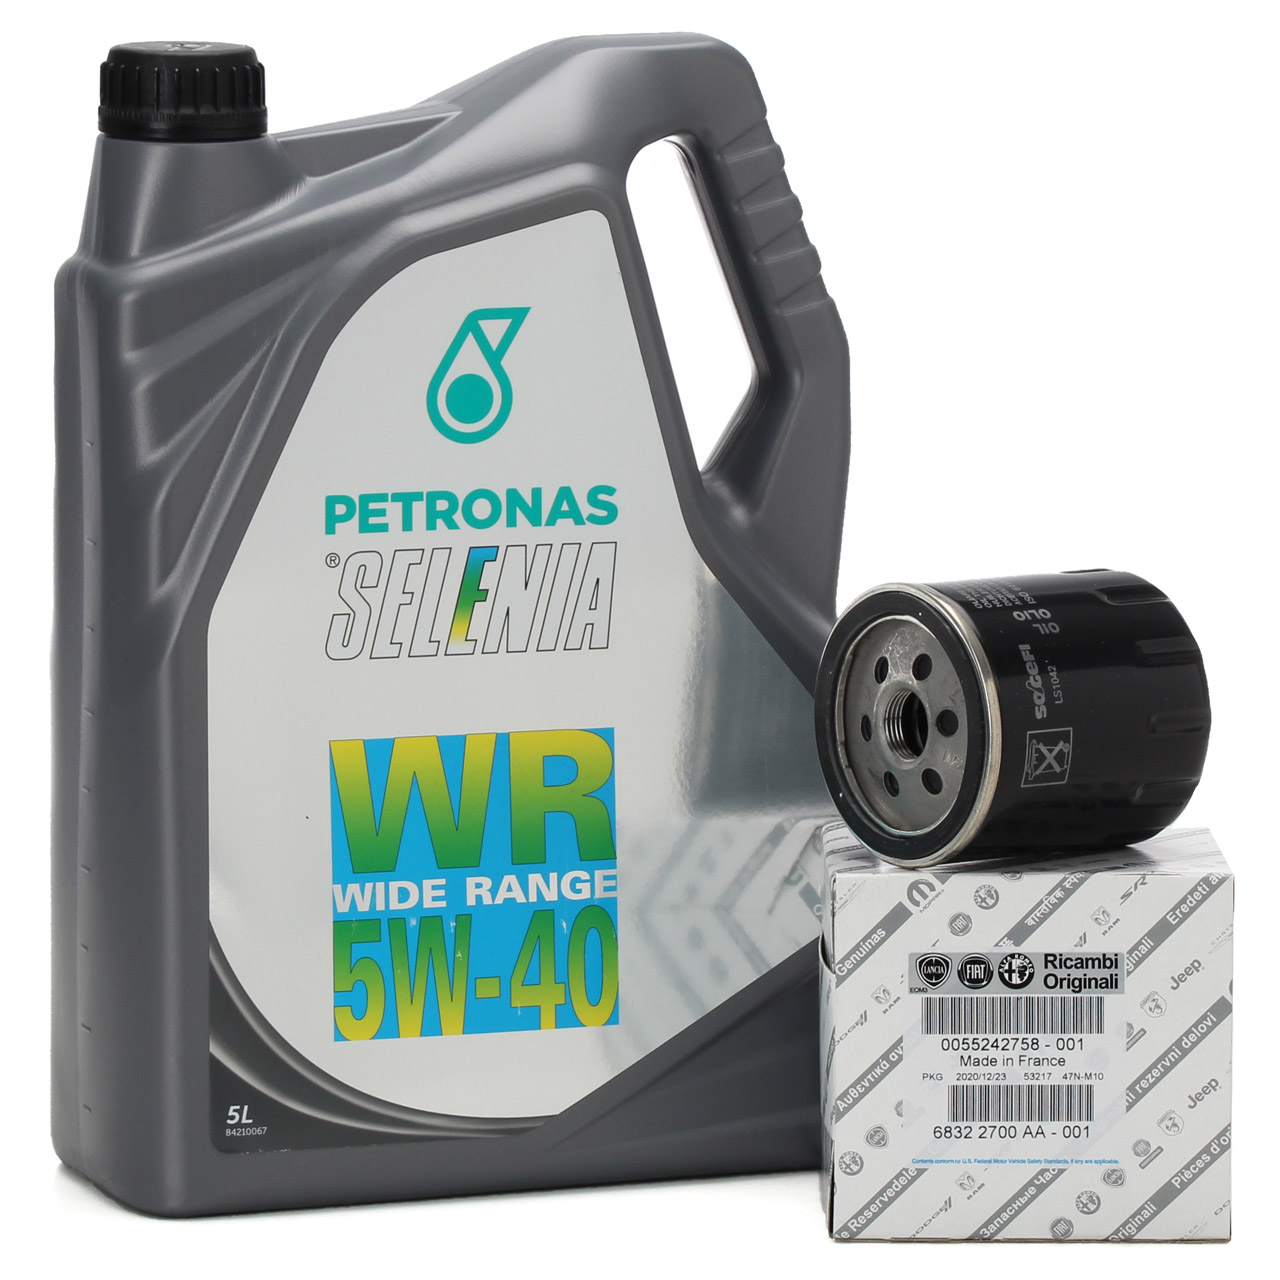 5L PETRONAS SELENIA Motoröl Öl WR WIDE RANGE 5W40 + ORIGINAL Fiat Ölfilter 55242758